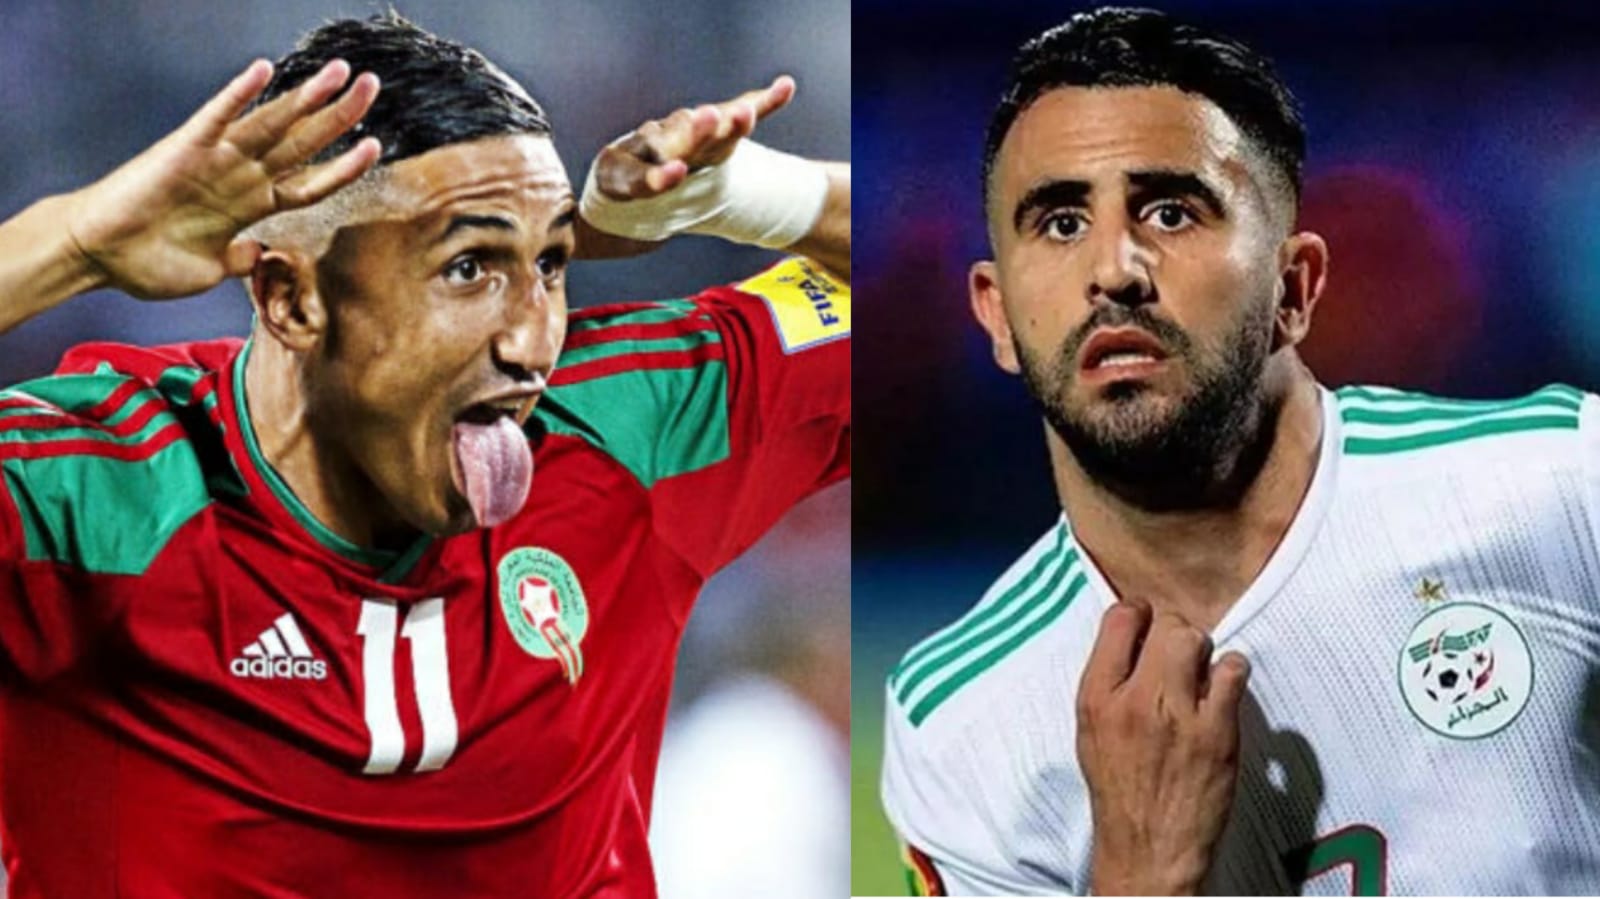 صحف عالمية: المغرب من أبرز المرشحين للفوز بكأس افريقيا والمنتخب الجزائري ضعيف وخيب ظن الجميع